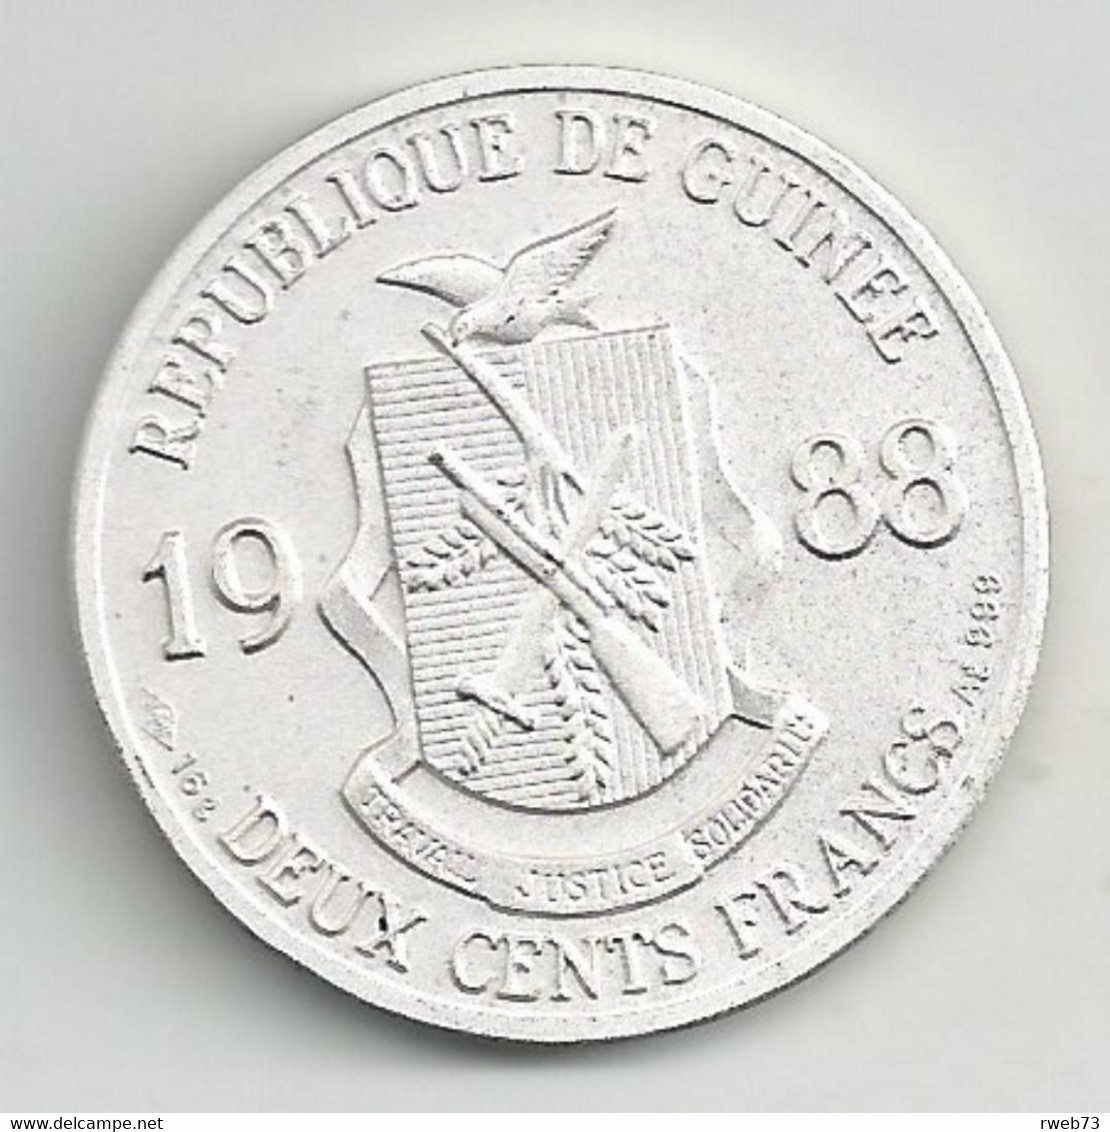 GUINEE - 200 Francs - 1988 - Basket - Barcelona 92 - TTB/SUP - RARE - Guinea